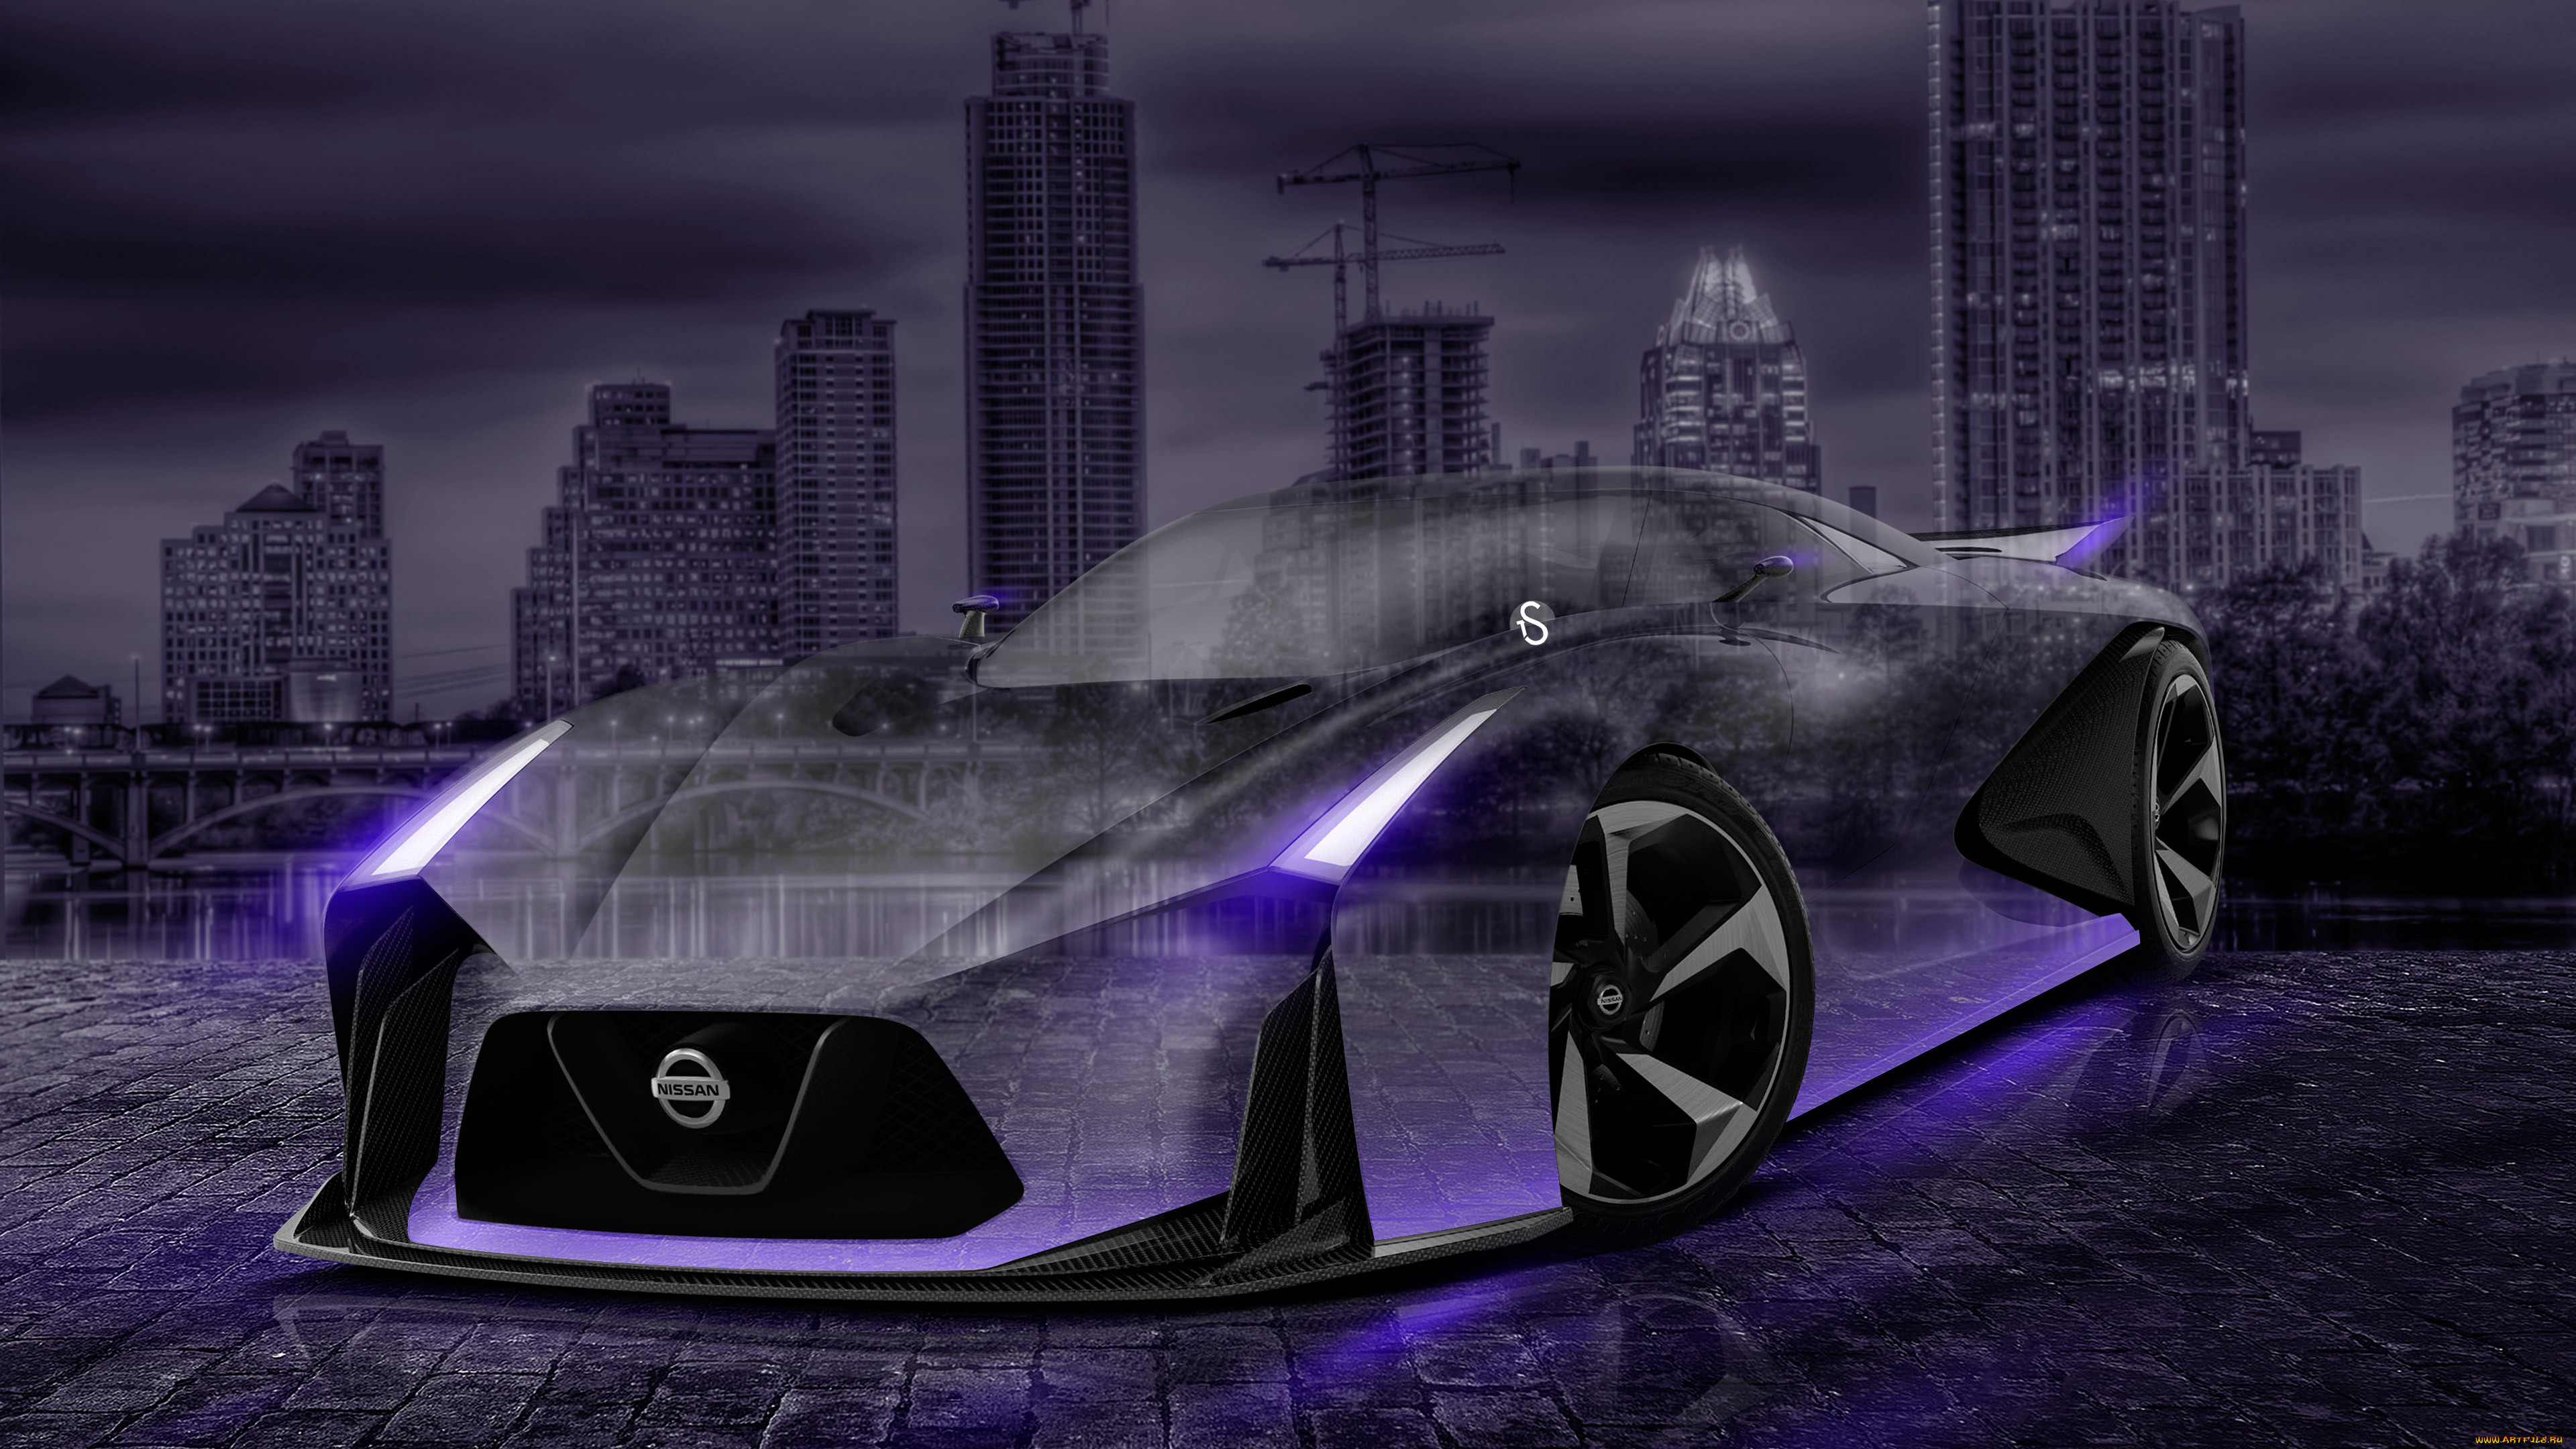 nissan gtr-2020 concept crystal city car 2015, , 3, nissan, gtr-2020, concept, crystal, city, car, 2015